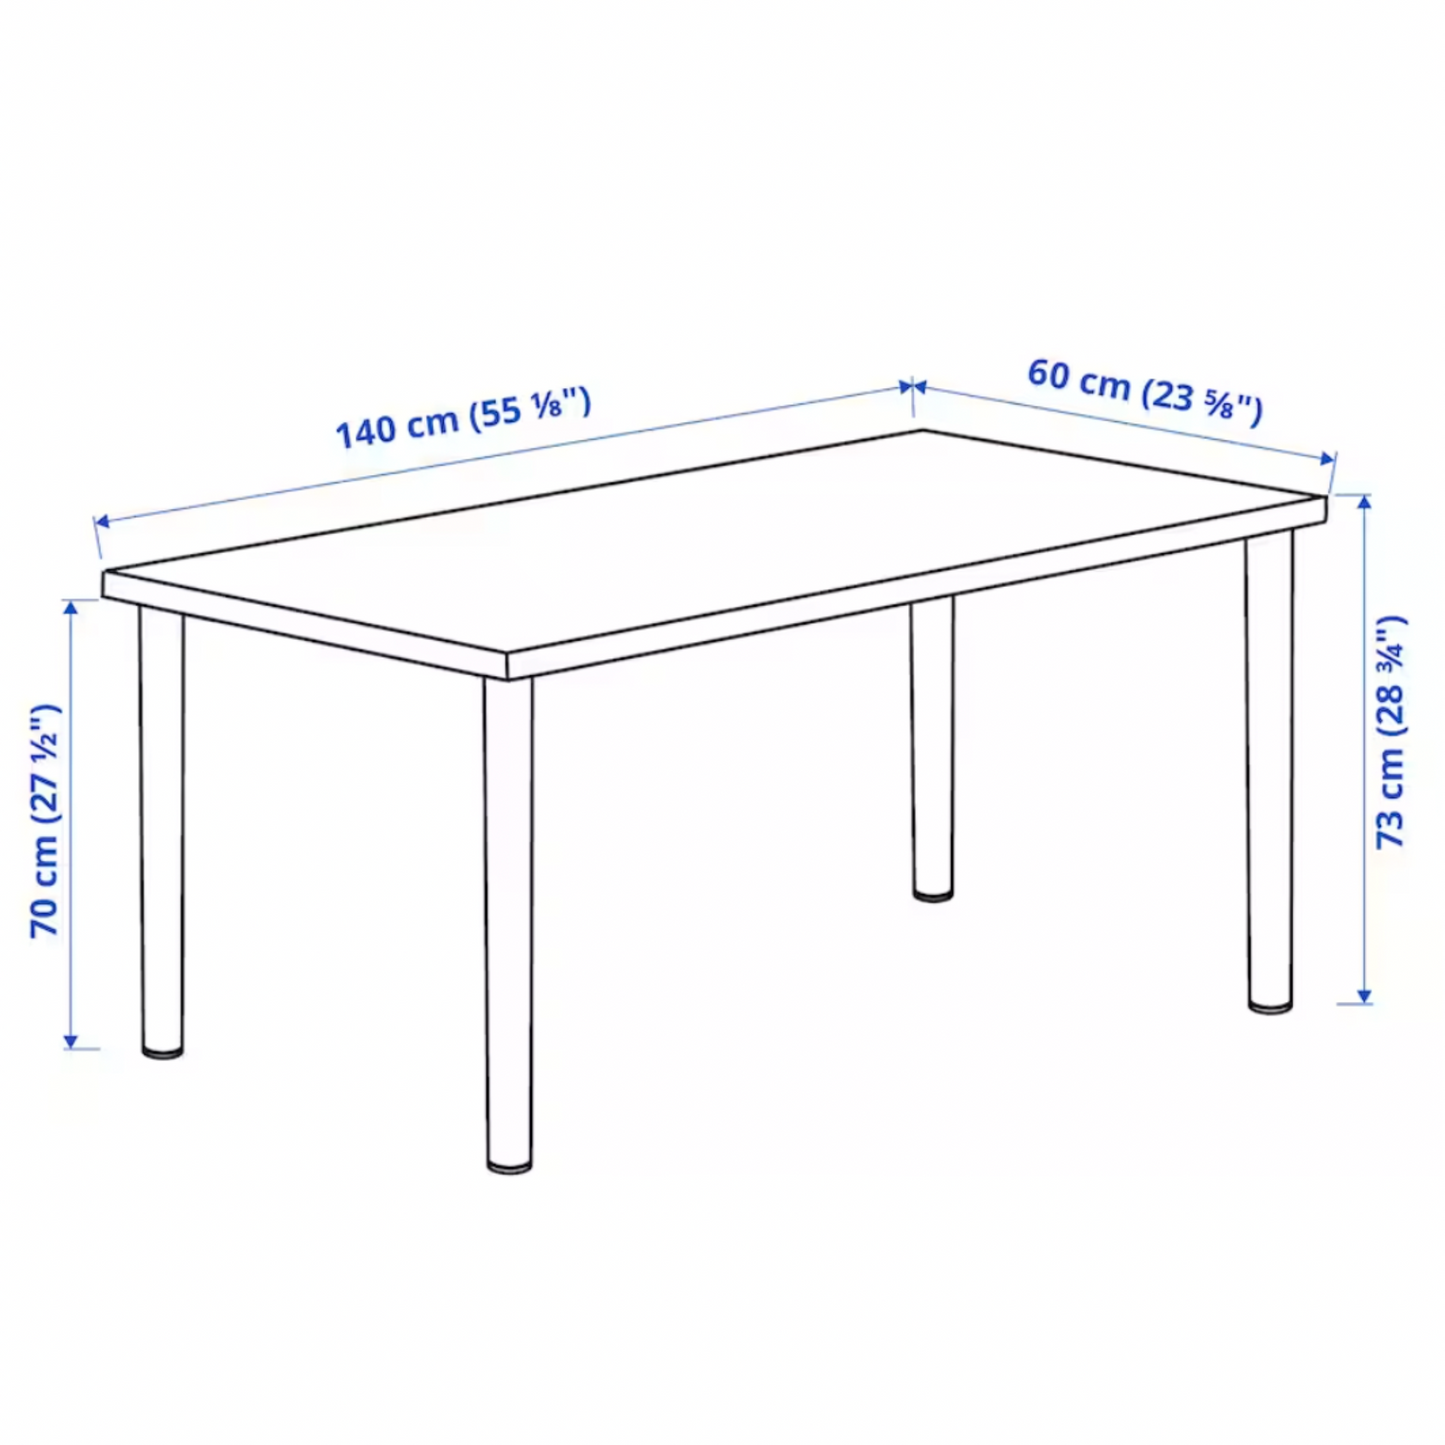 Ikea Lagkapten / Adils Desk Combo, 140x60x73cm, White (8130971140383)